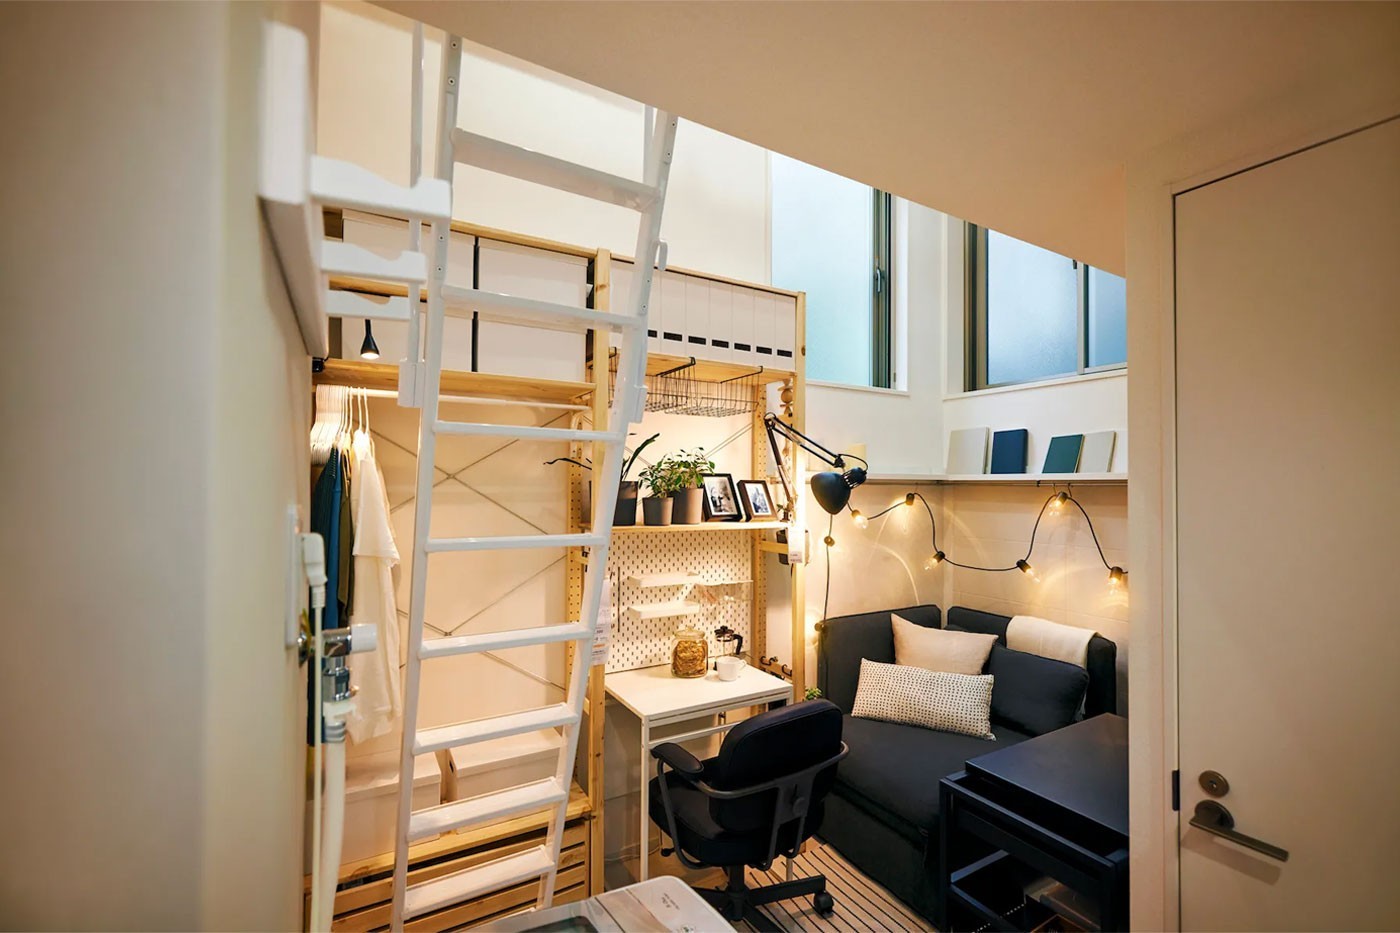 日本宜家 IKEA Japan 推出每月不到 $1 美元的「Tiny Homes」迷你租屋处